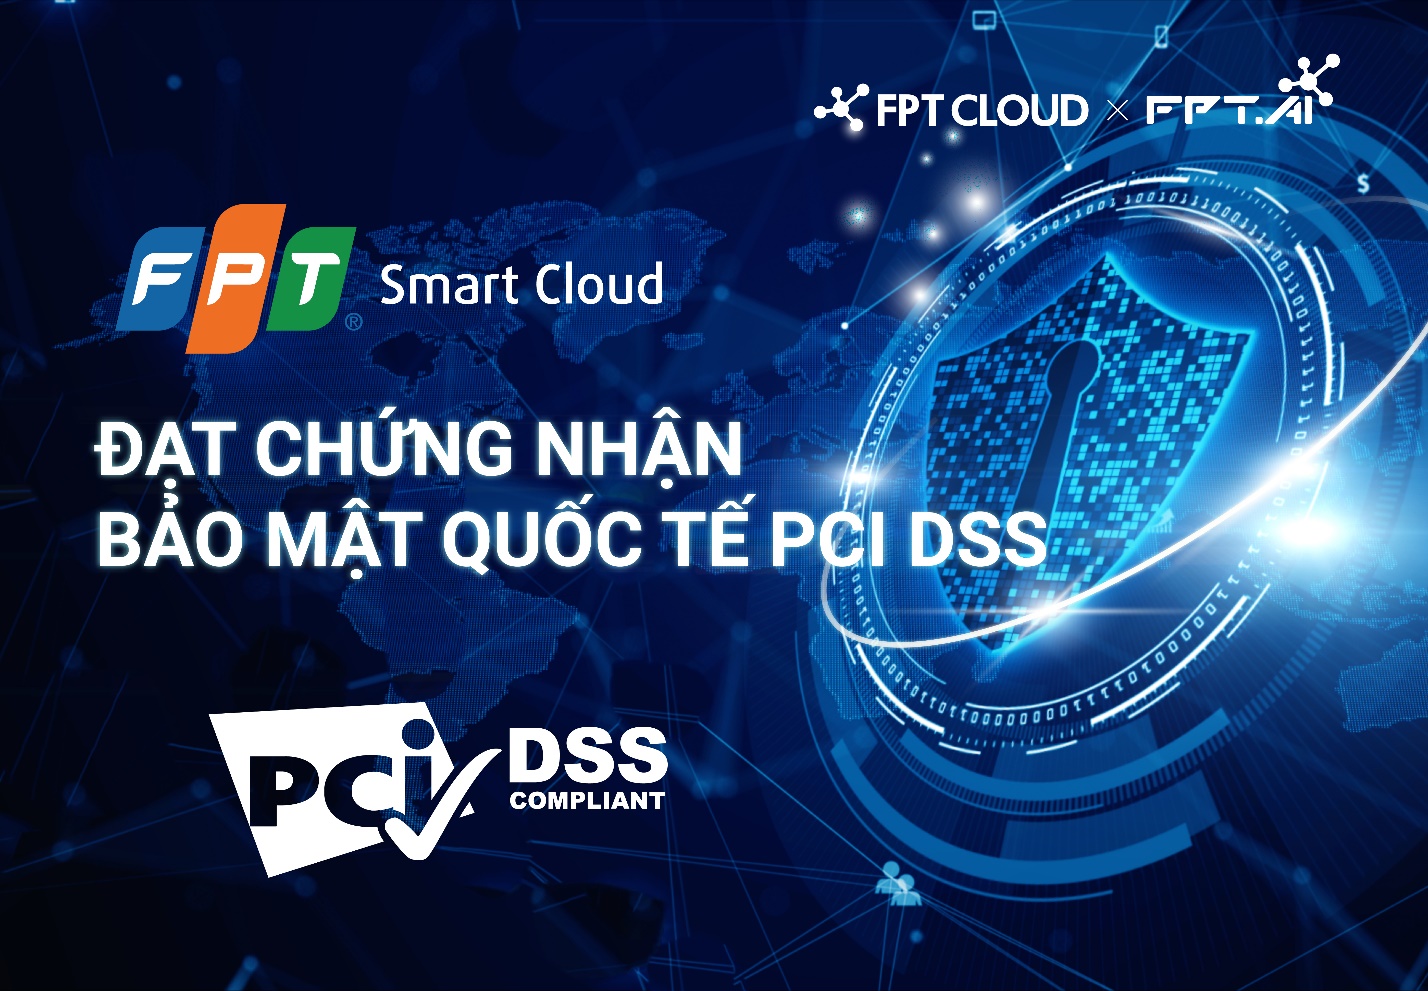 FPT Smart Cloud đạt chứng chỉ Bảo mật Quốc tế PCI DSS mức độ cao nhất - Ảnh 1.